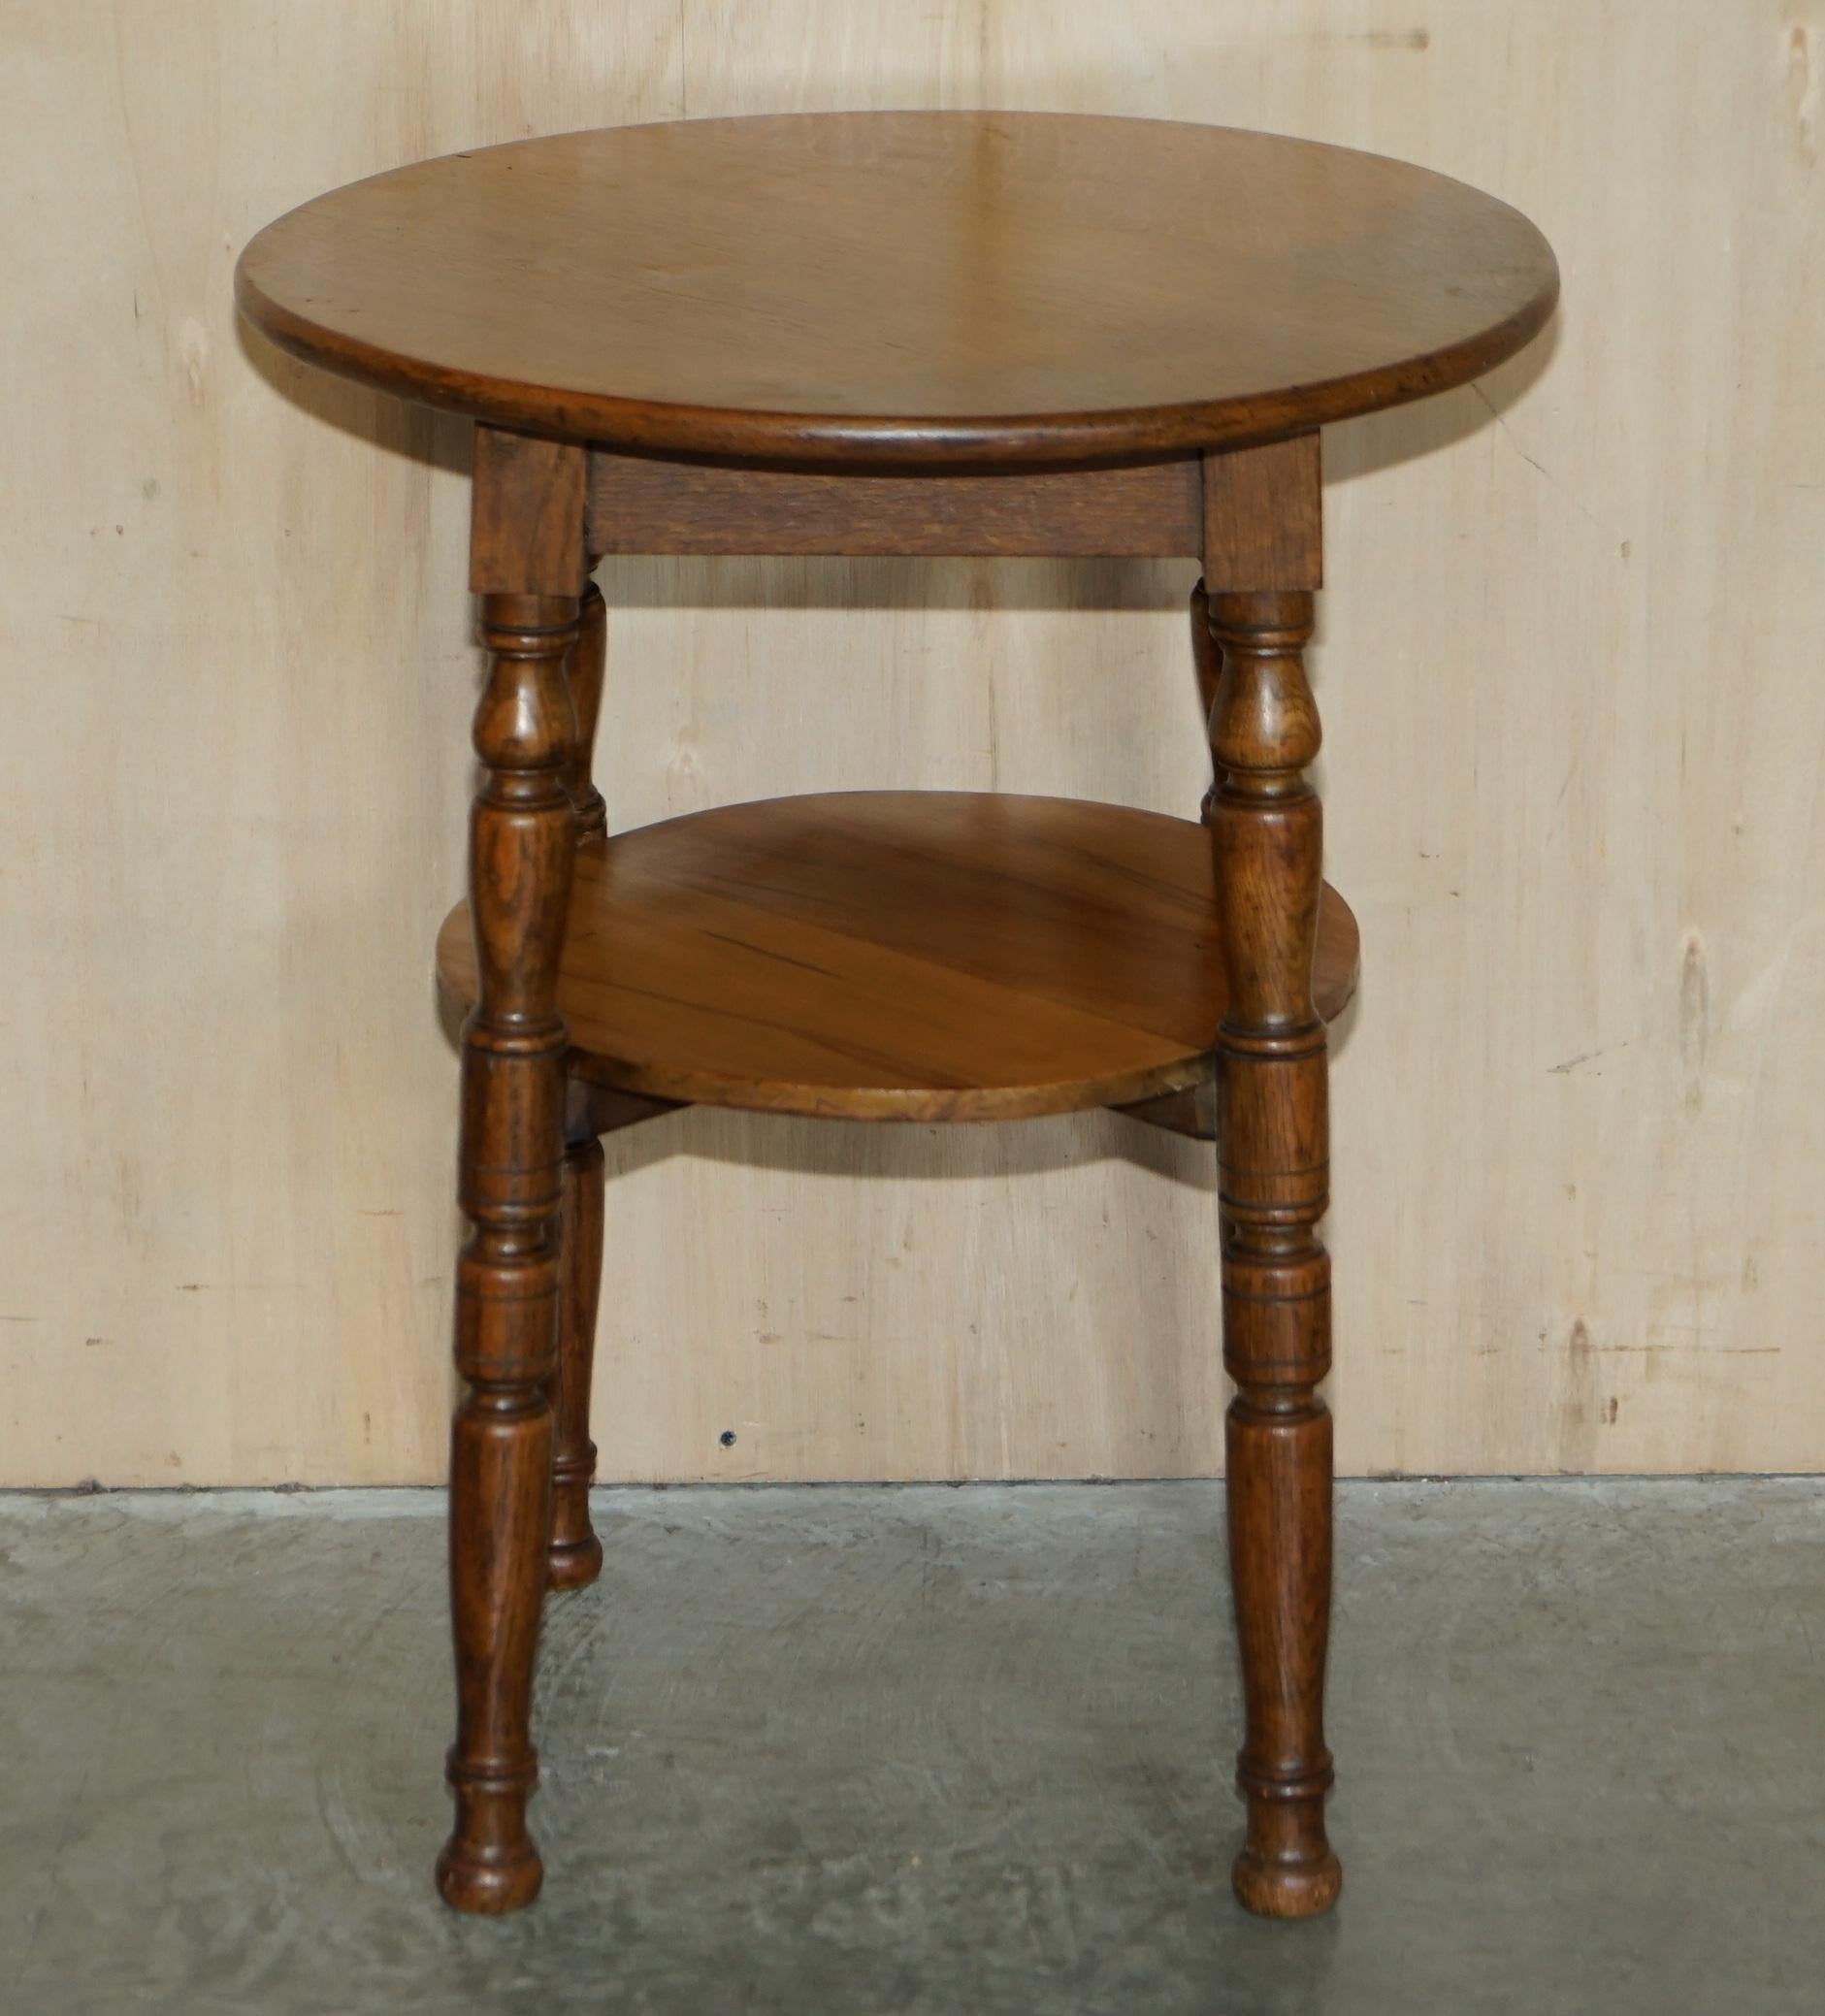 Nous sommes ravis de proposer à la vente cette belle table d'appoint ronde en chêne, datant de 1900, avec des pieds tournés

Une très belle pièce bien faite et décorative, les pieds sont joliment tournés, c'est une table à deux niveaux donc vous